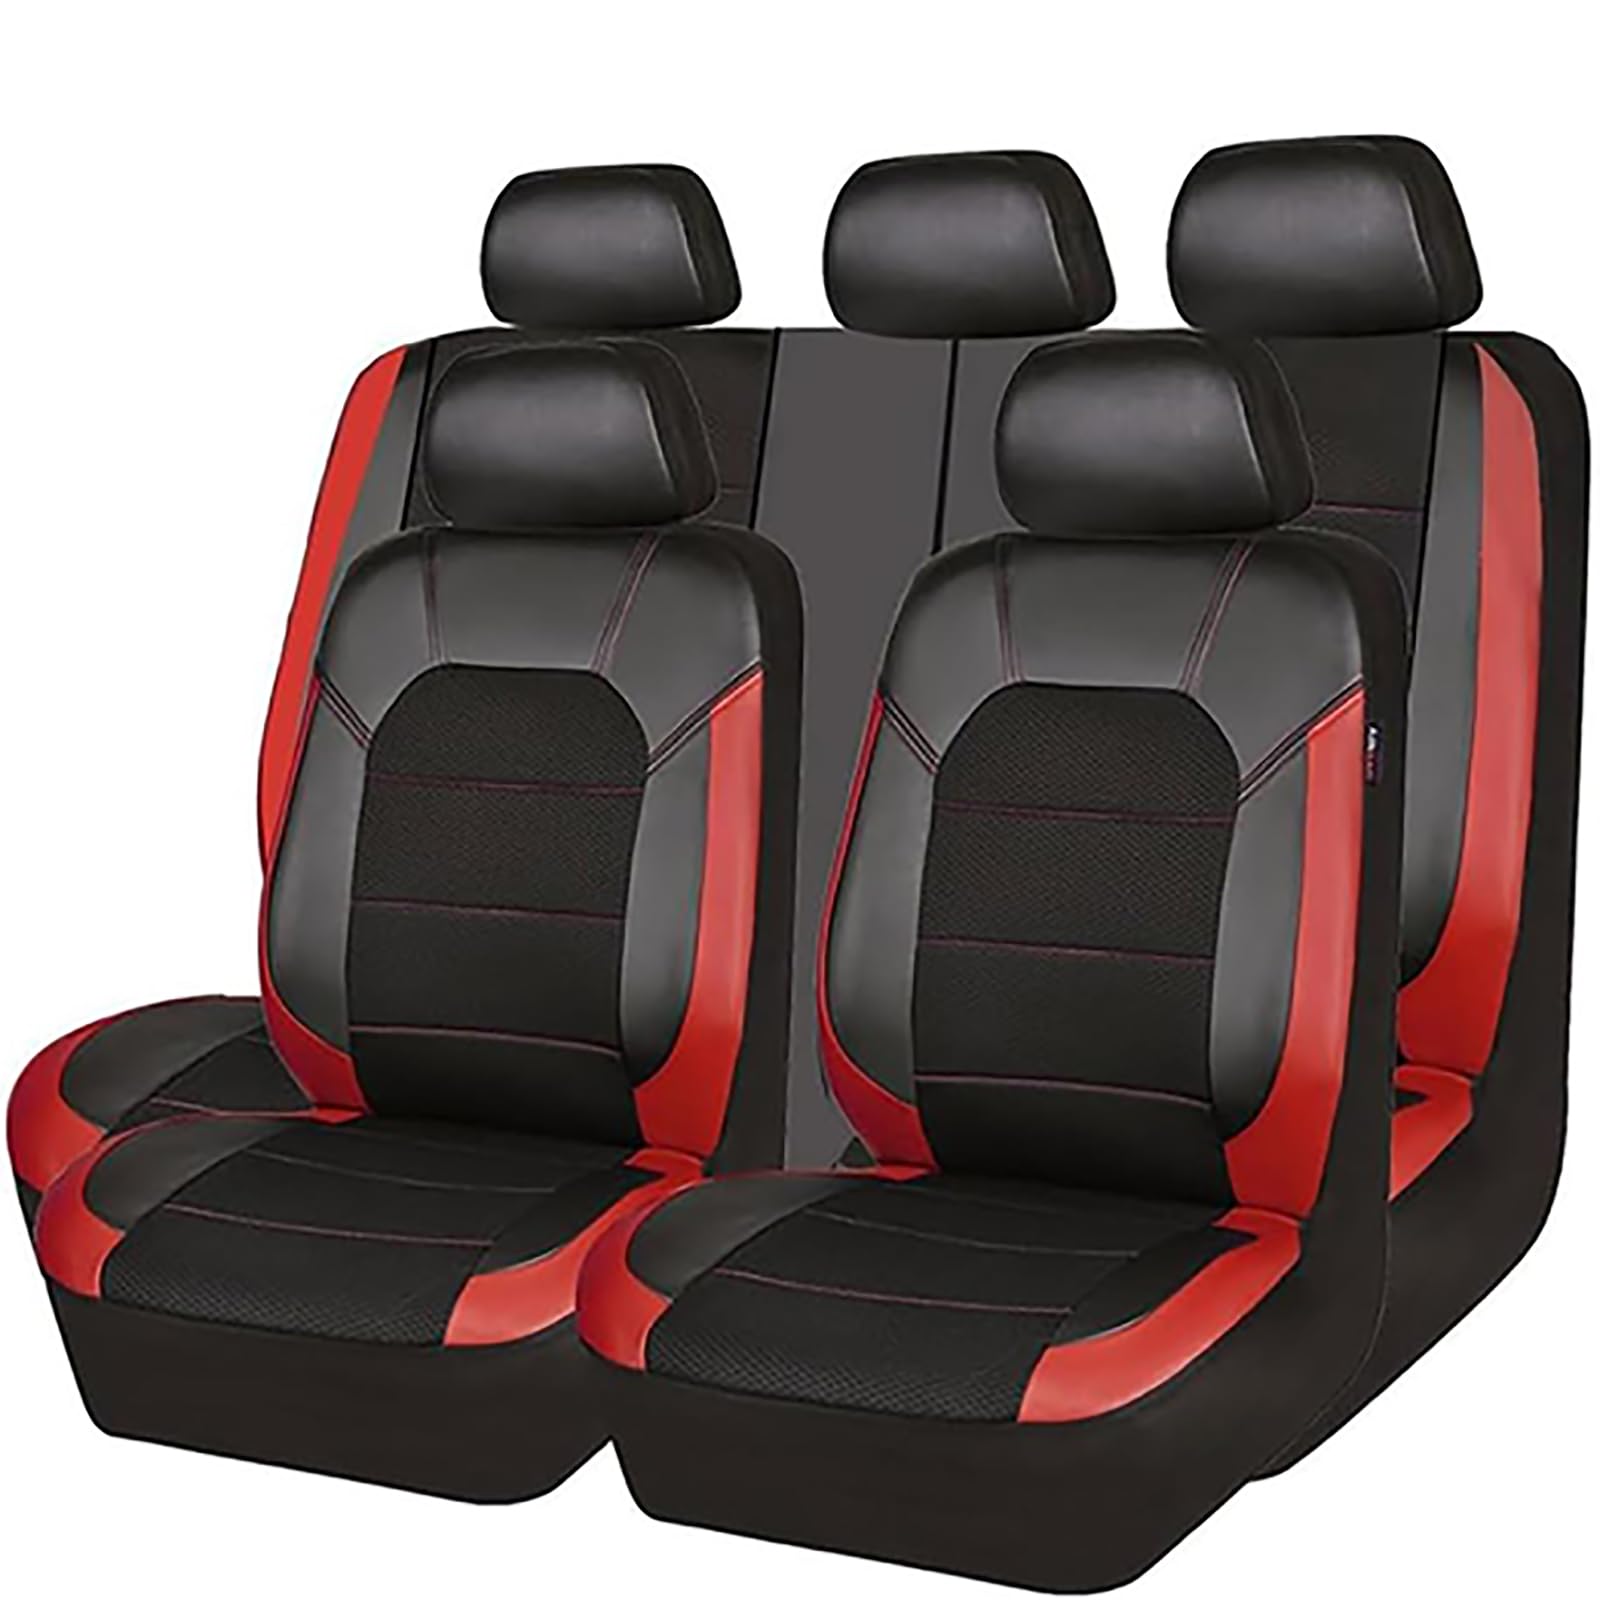 EYHQKRTR Auto Leder Sitzkissen Für Kia Ev6 GT 2018-2025, 5 Sitzer Full Set SitzbezüGe Schonbezug Vorne Rückbank Sitzschutz Compatible Airbag Innenraum Zubehör,D/Red von EYHQKRTR